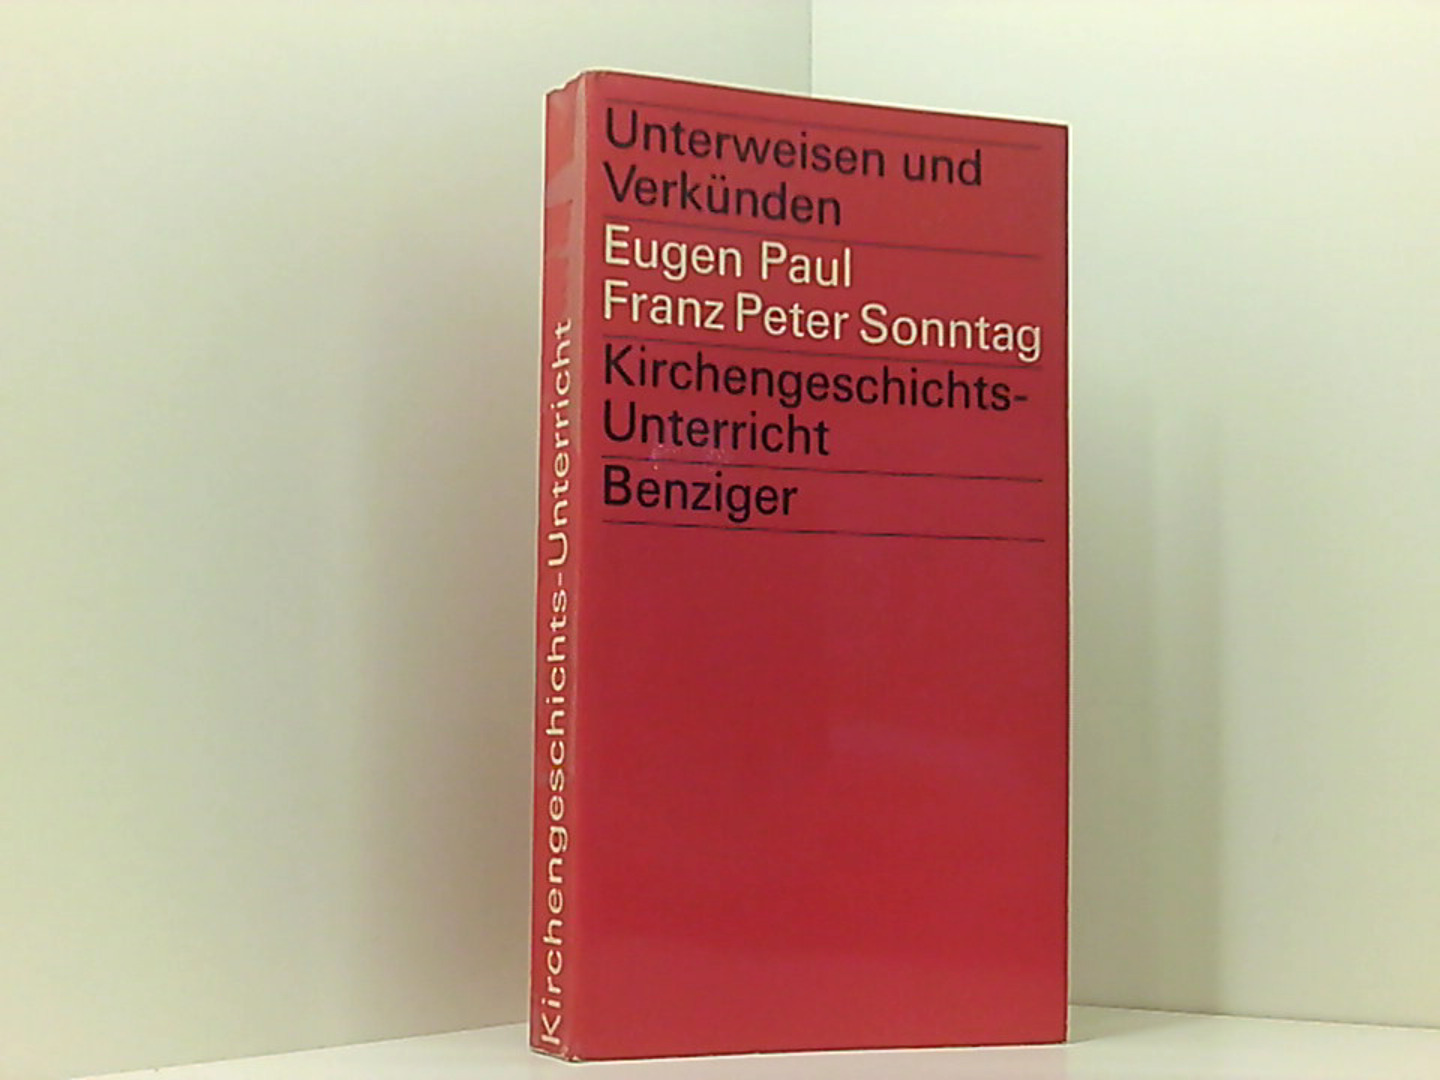 Eugen Paul: Unterweisen und Verkünden: Kirchengeschichts-Unterricht - Eugen Paul Franz Peter, Sonntag